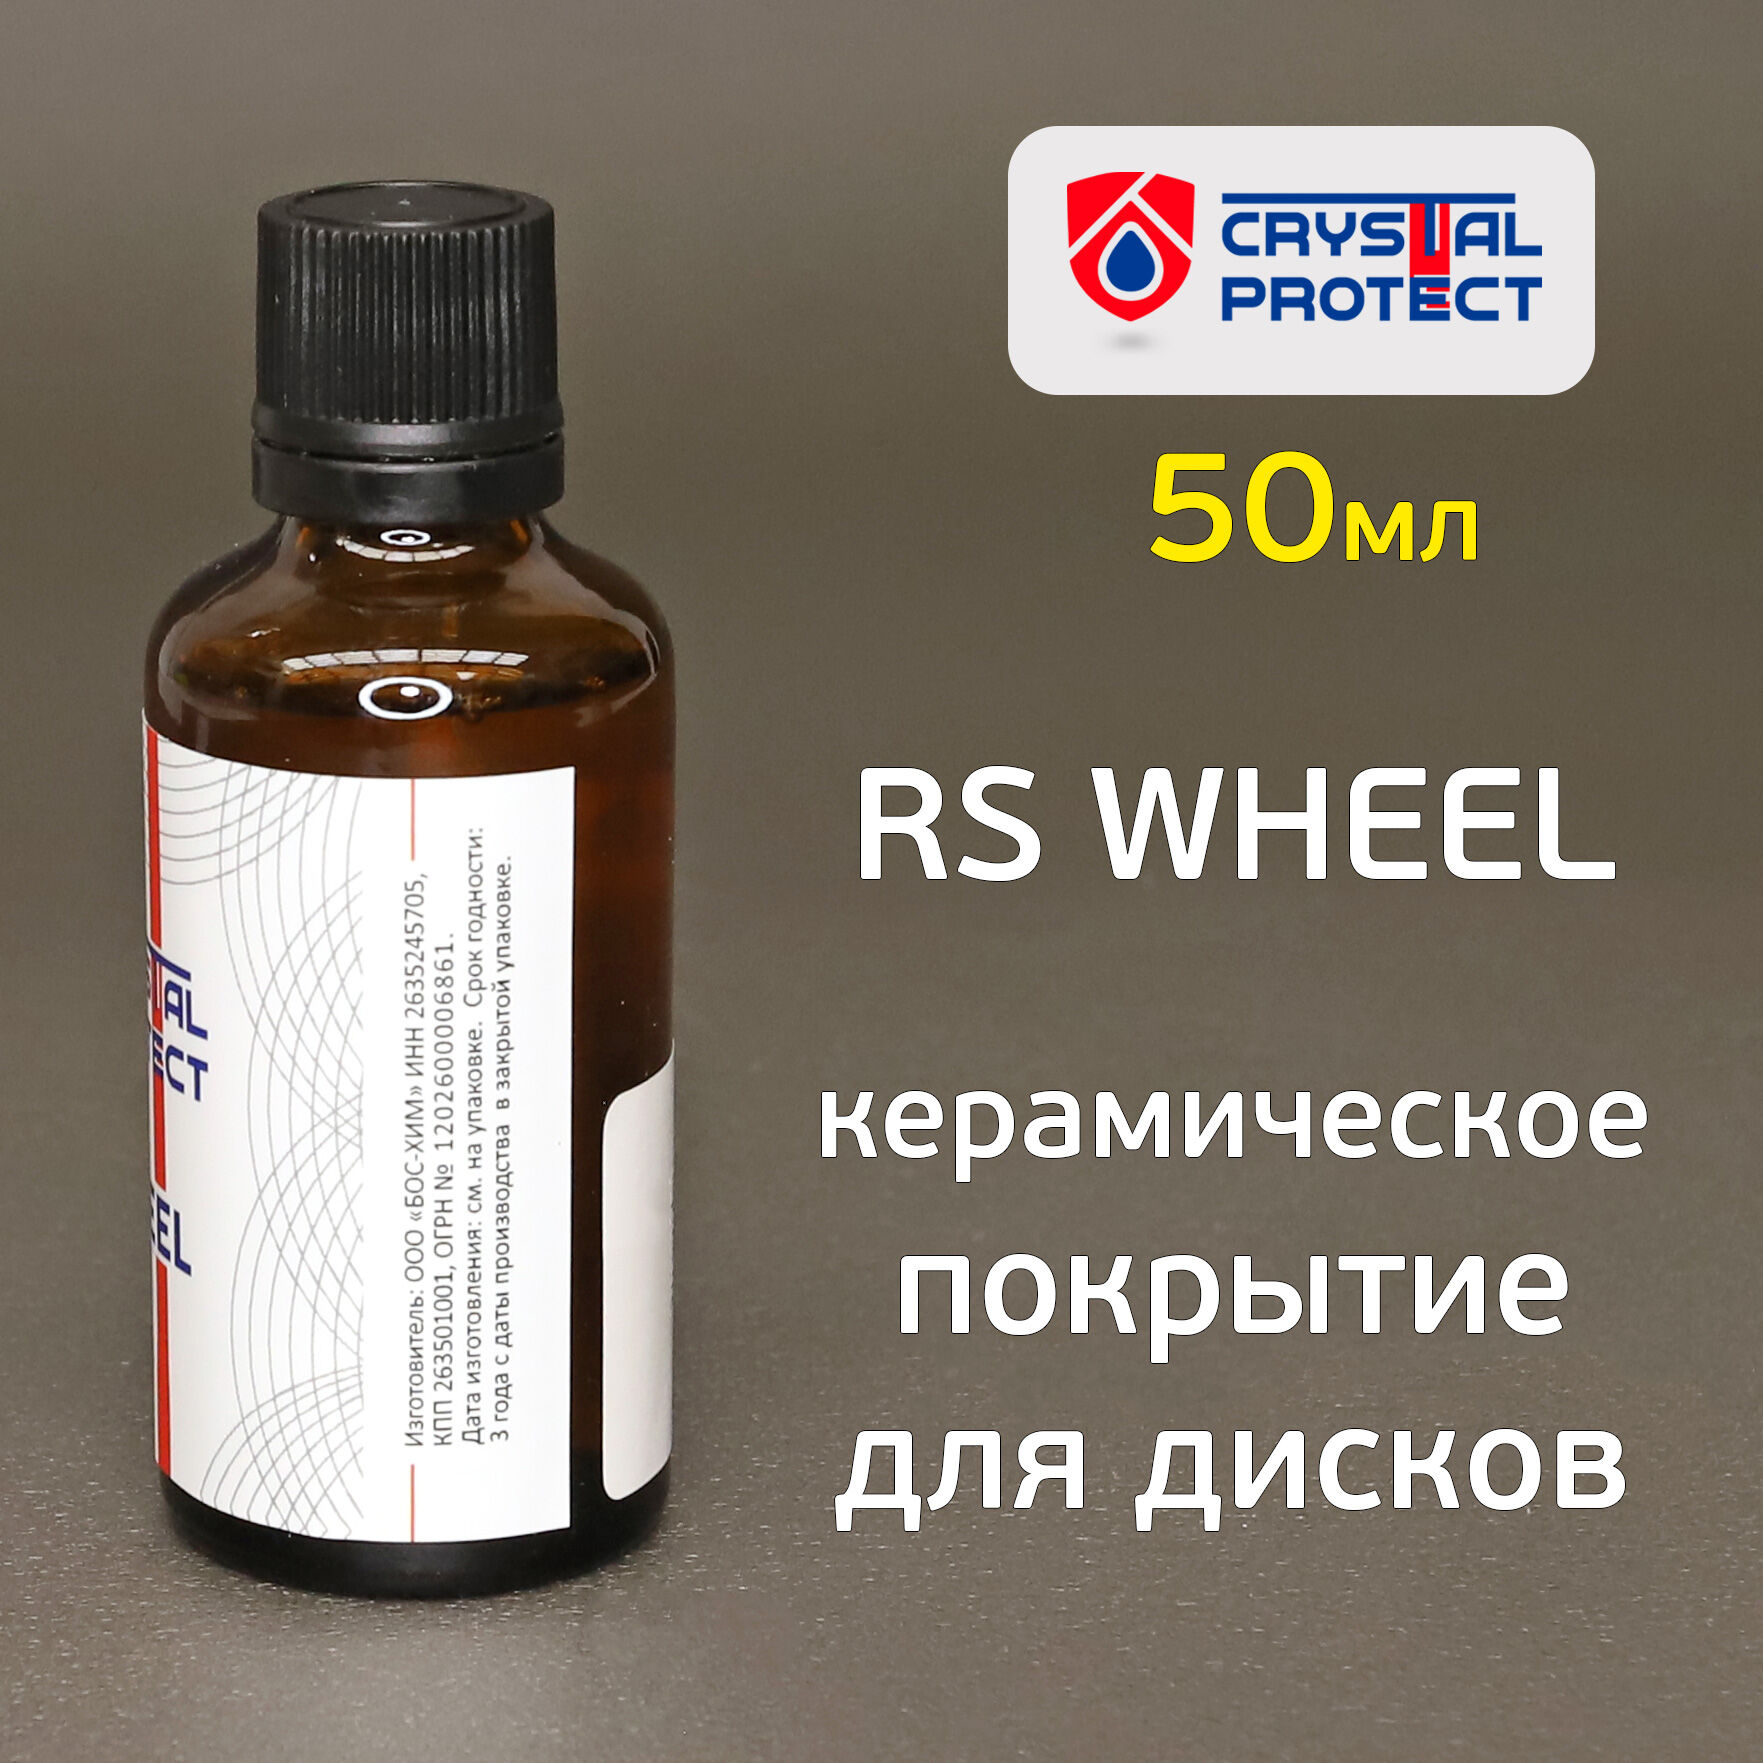 Керамическое покрытие для дисков RS Wheel (50мл) Crystal Protect защитное 2